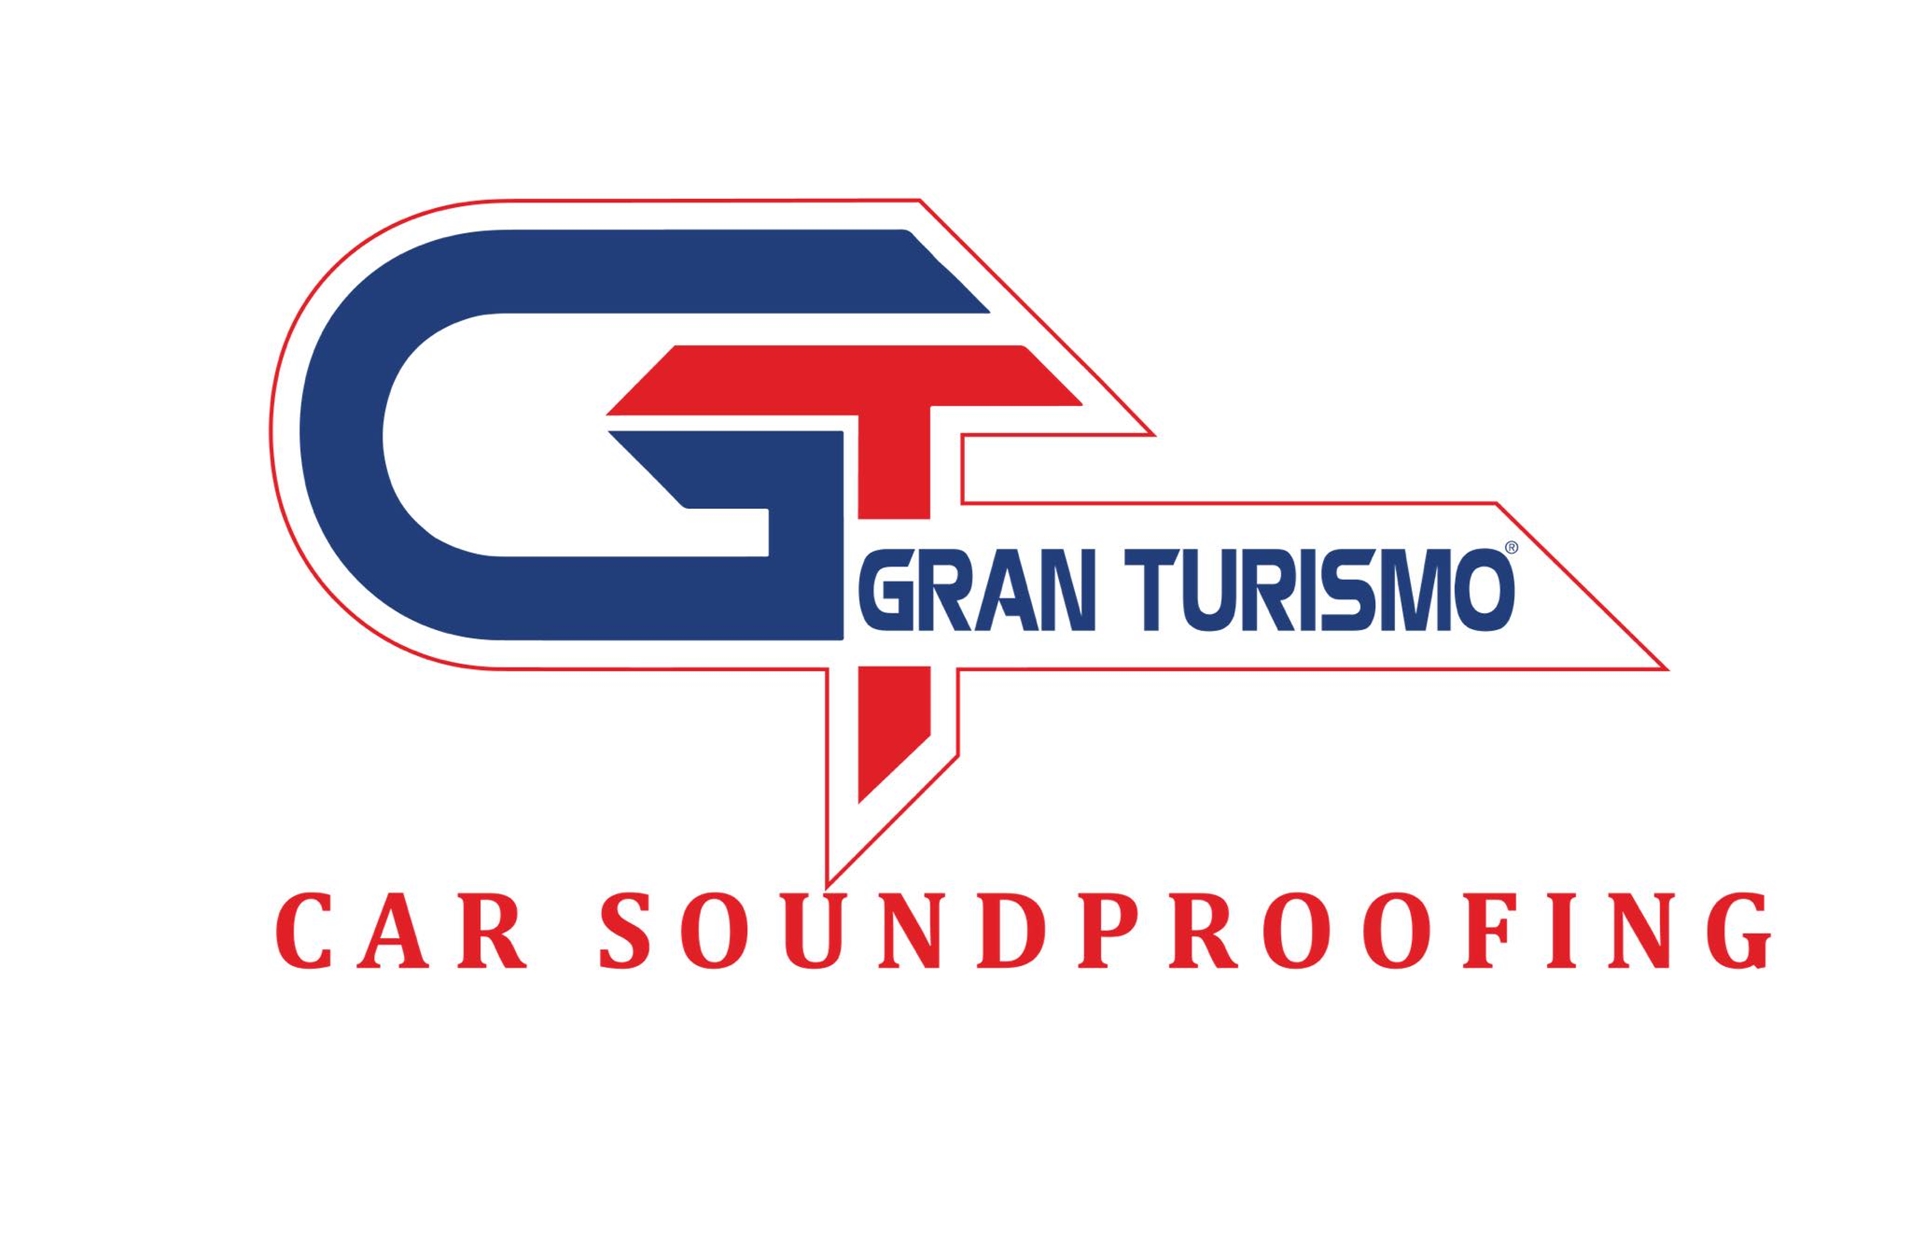 Biện pháp cách âm chống ồn cho ô tô là dùng GT Gran Turismo Mat 2.0